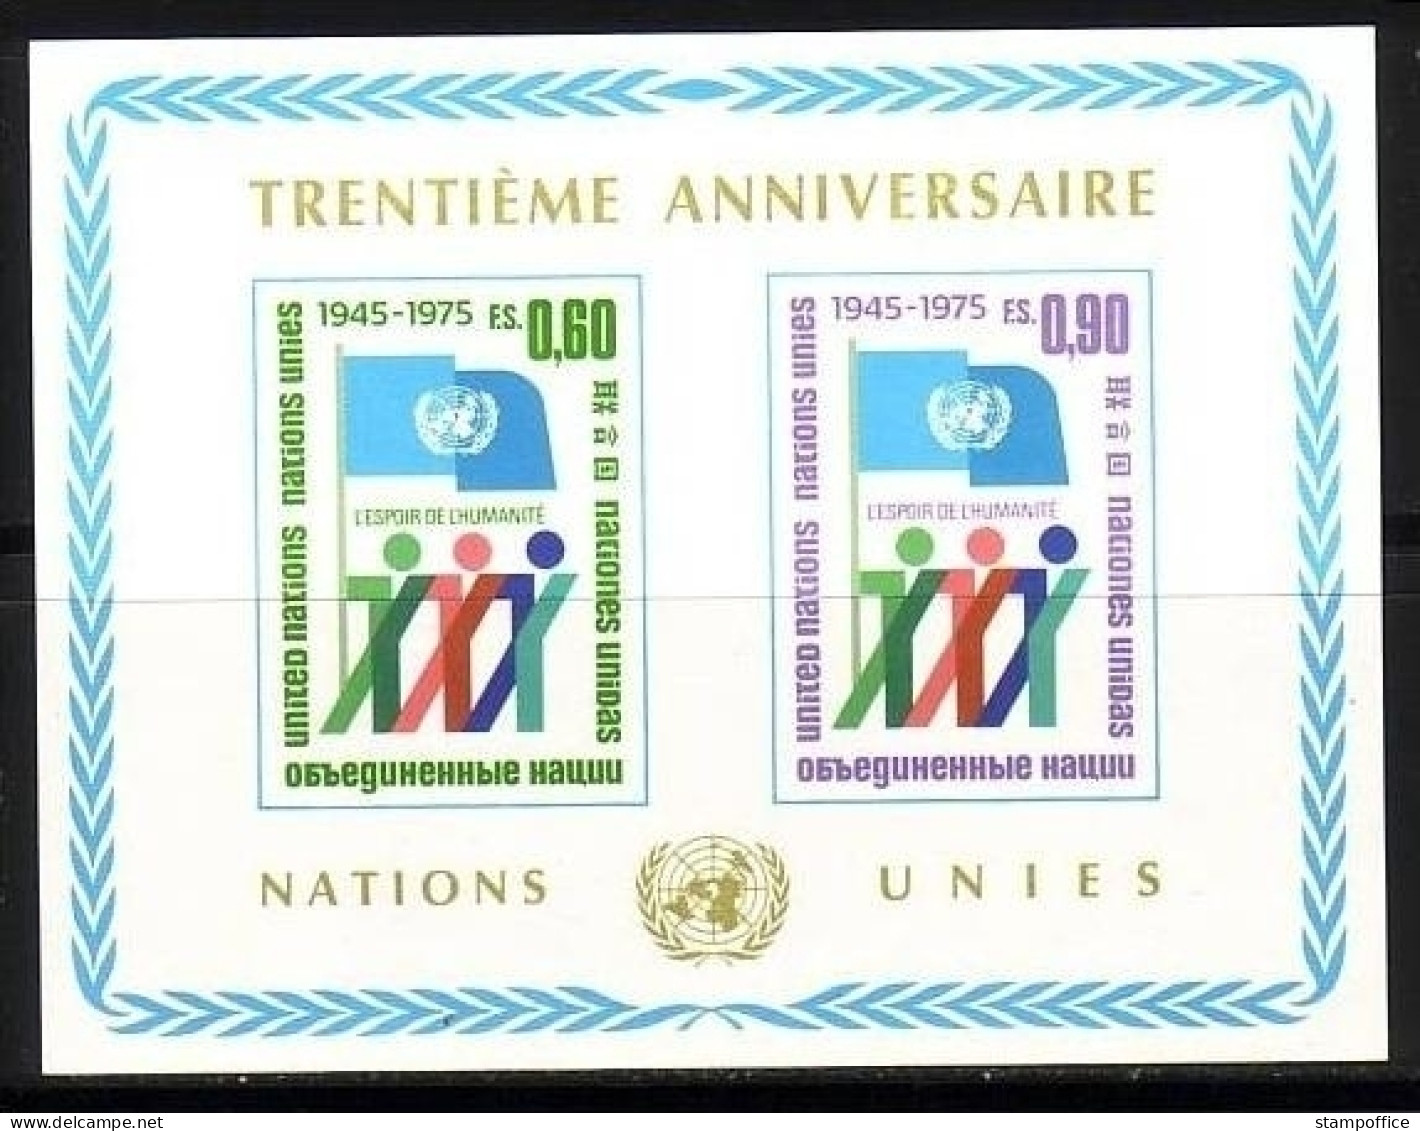 UNO GENF BLOCK 1 POSTFRISCH 30 JAHRE VEREINTE NATIONEN 1975 - Blocks & Sheetlets